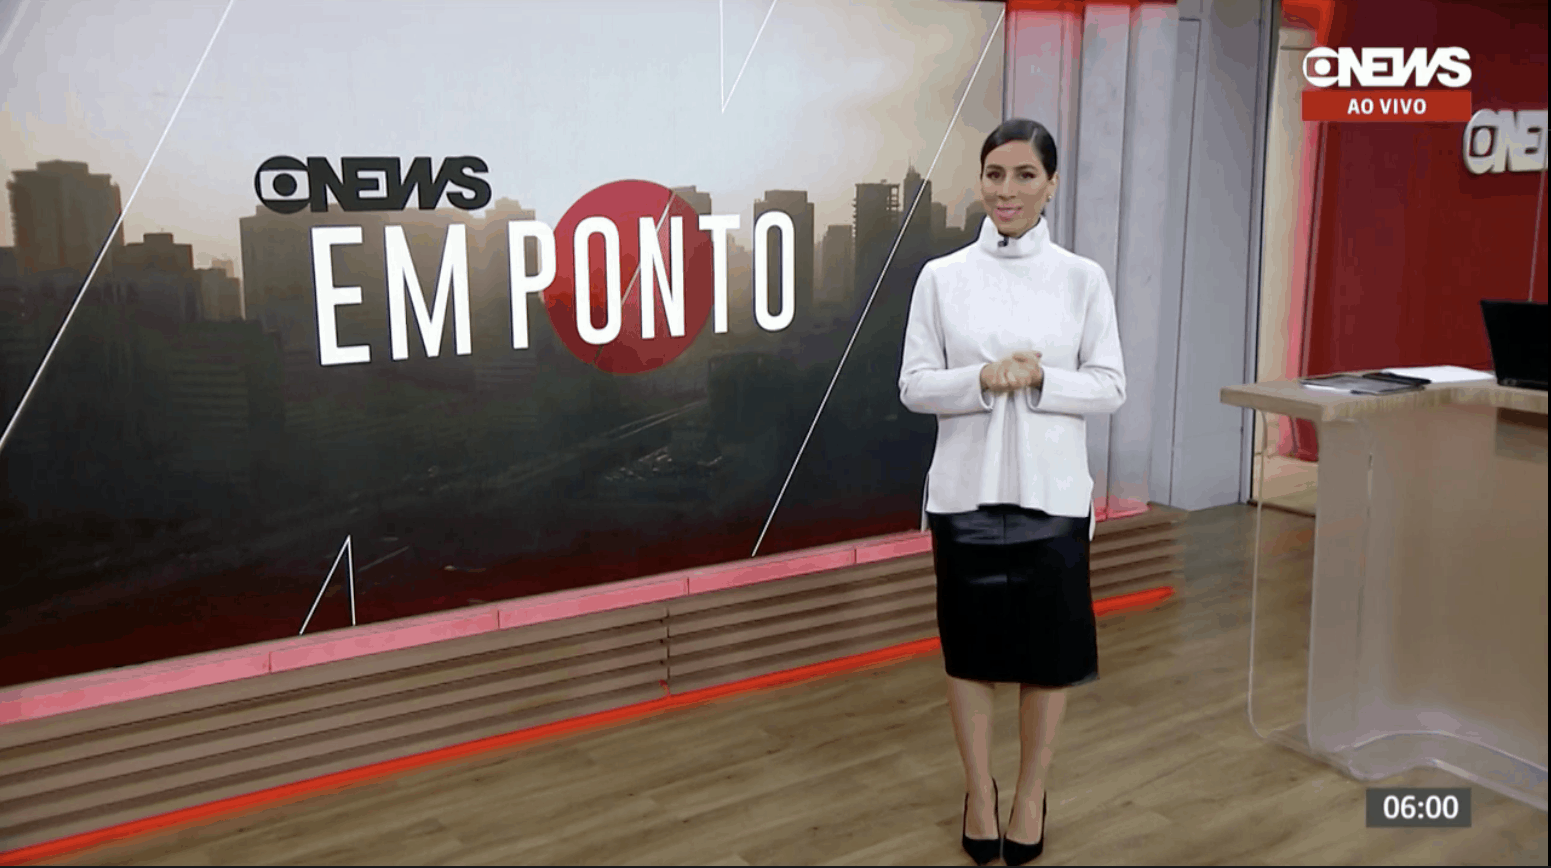 GloboNews cresce em 84% de audiência desde o início da pandemia